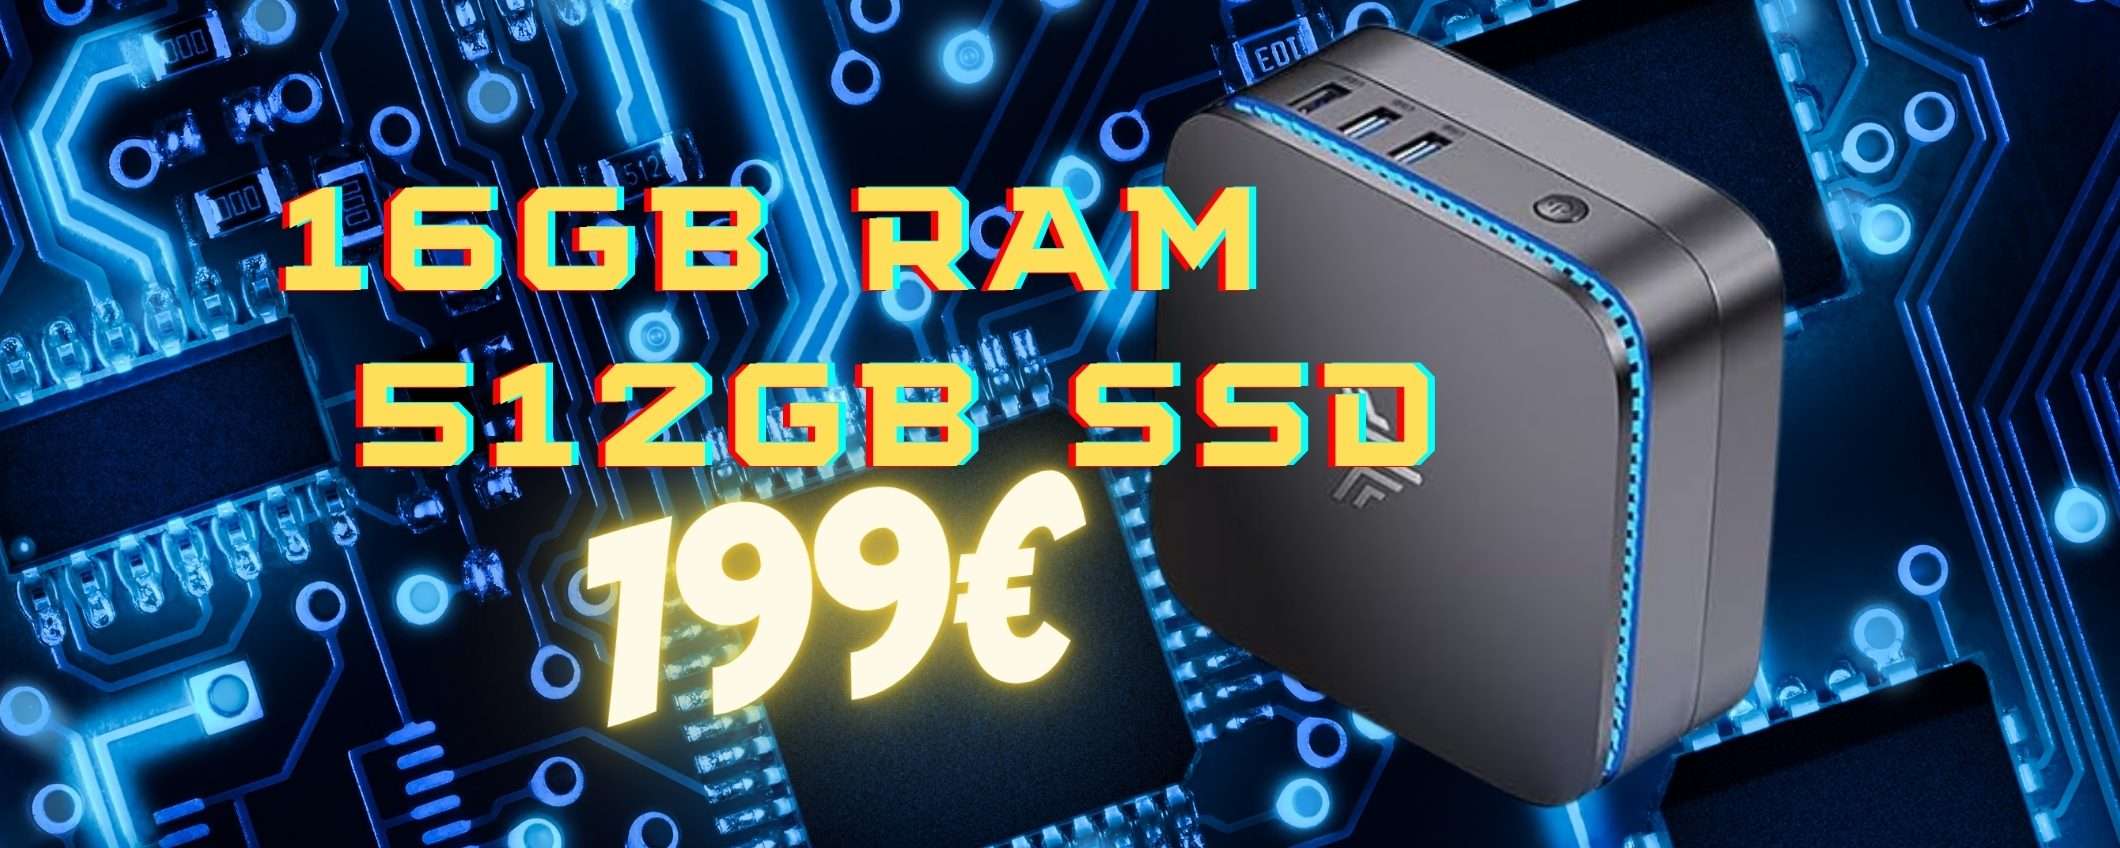 Mini PC con 16GB RAM e 512GB SSD in SCONTO di 80€ è tuo a soli 199€